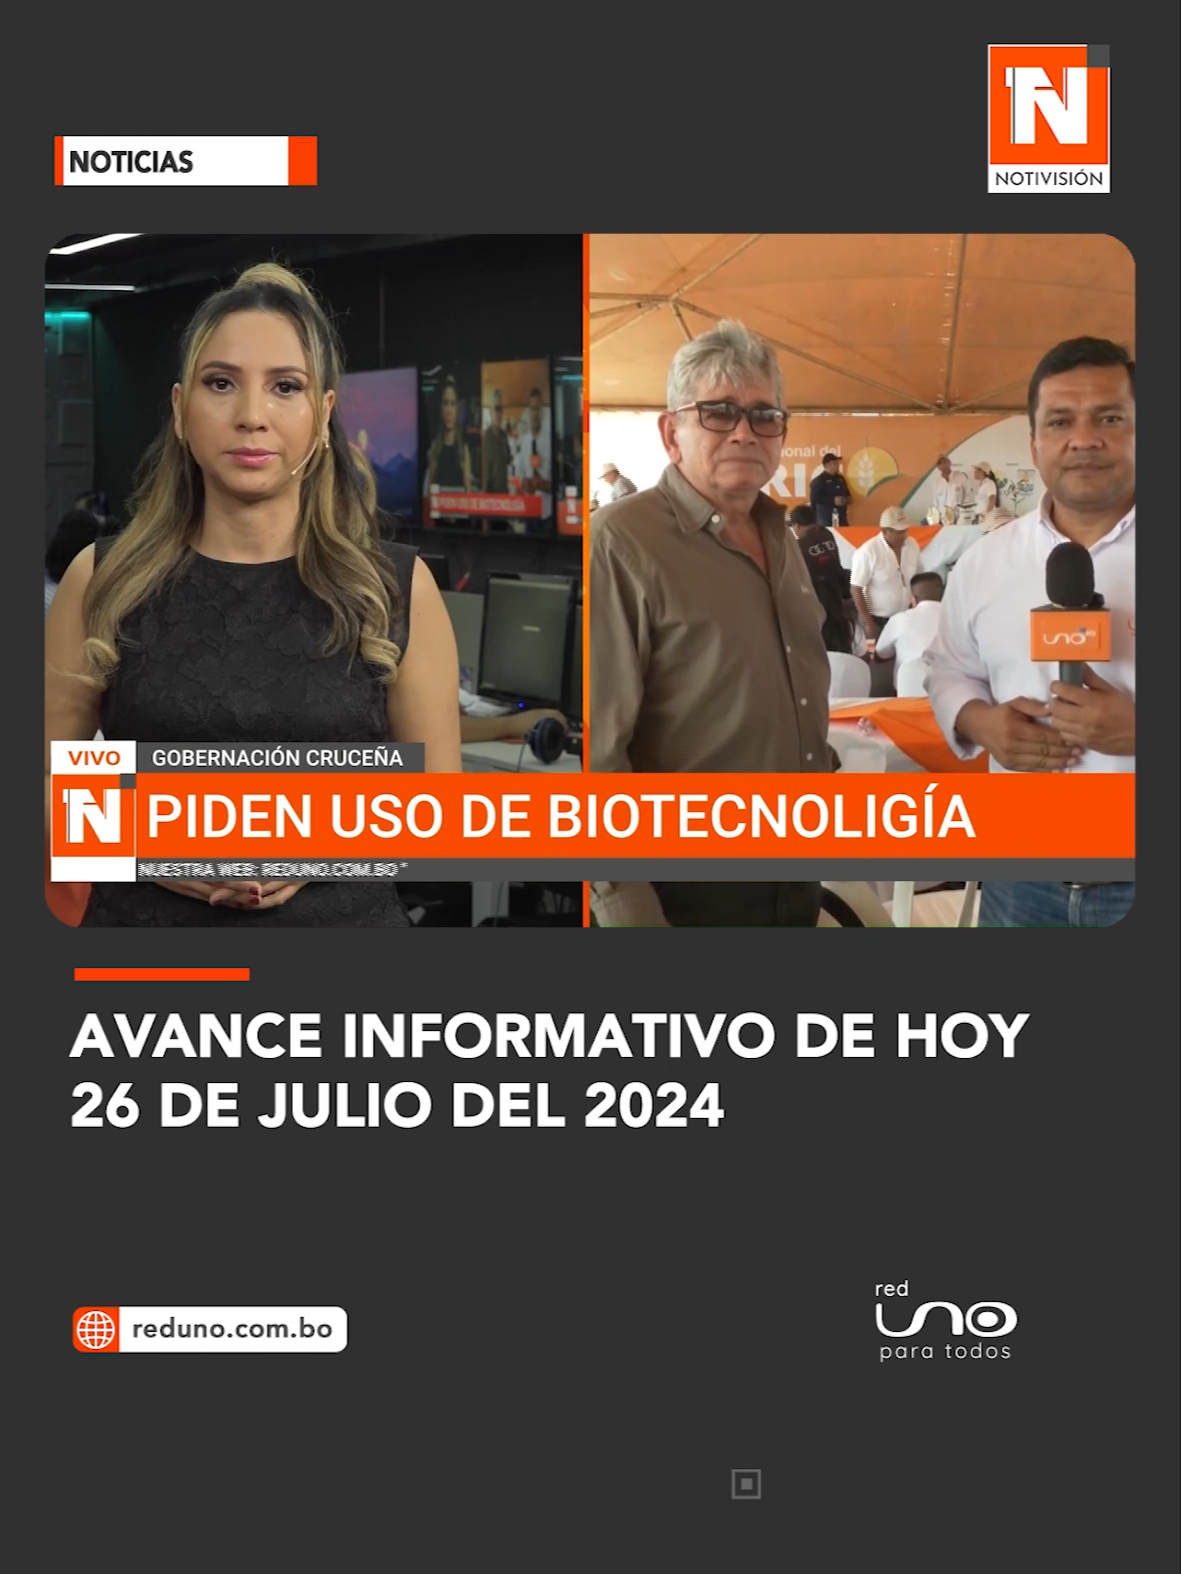 #NotivisionSCZ I Avance informativo de hoy, 26 de julio del 2024.  @marylinmm  Más información en www.reduno.com.bo #RedUno #redunodigitales #Gobernación #Biotecnología #SantaCruz #Diesel